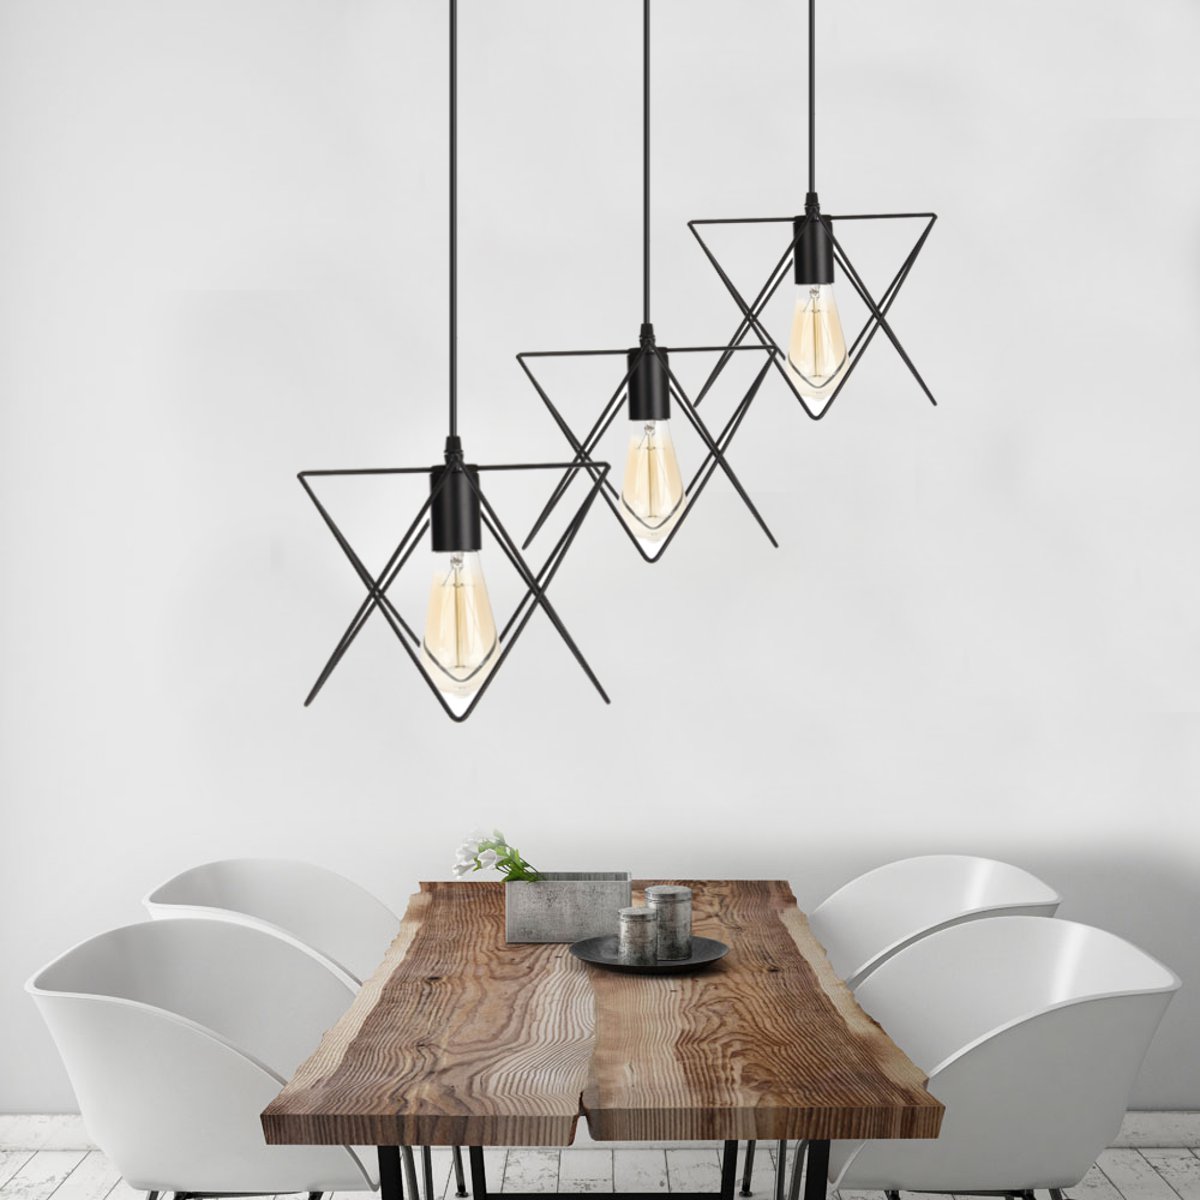 3-In-1-Metal-Vintage-Ceiling-Light-Pendant-Lamp-Cage-Lampshade-Fixture-Chandelier-Indoor-Lighting-1118747-2